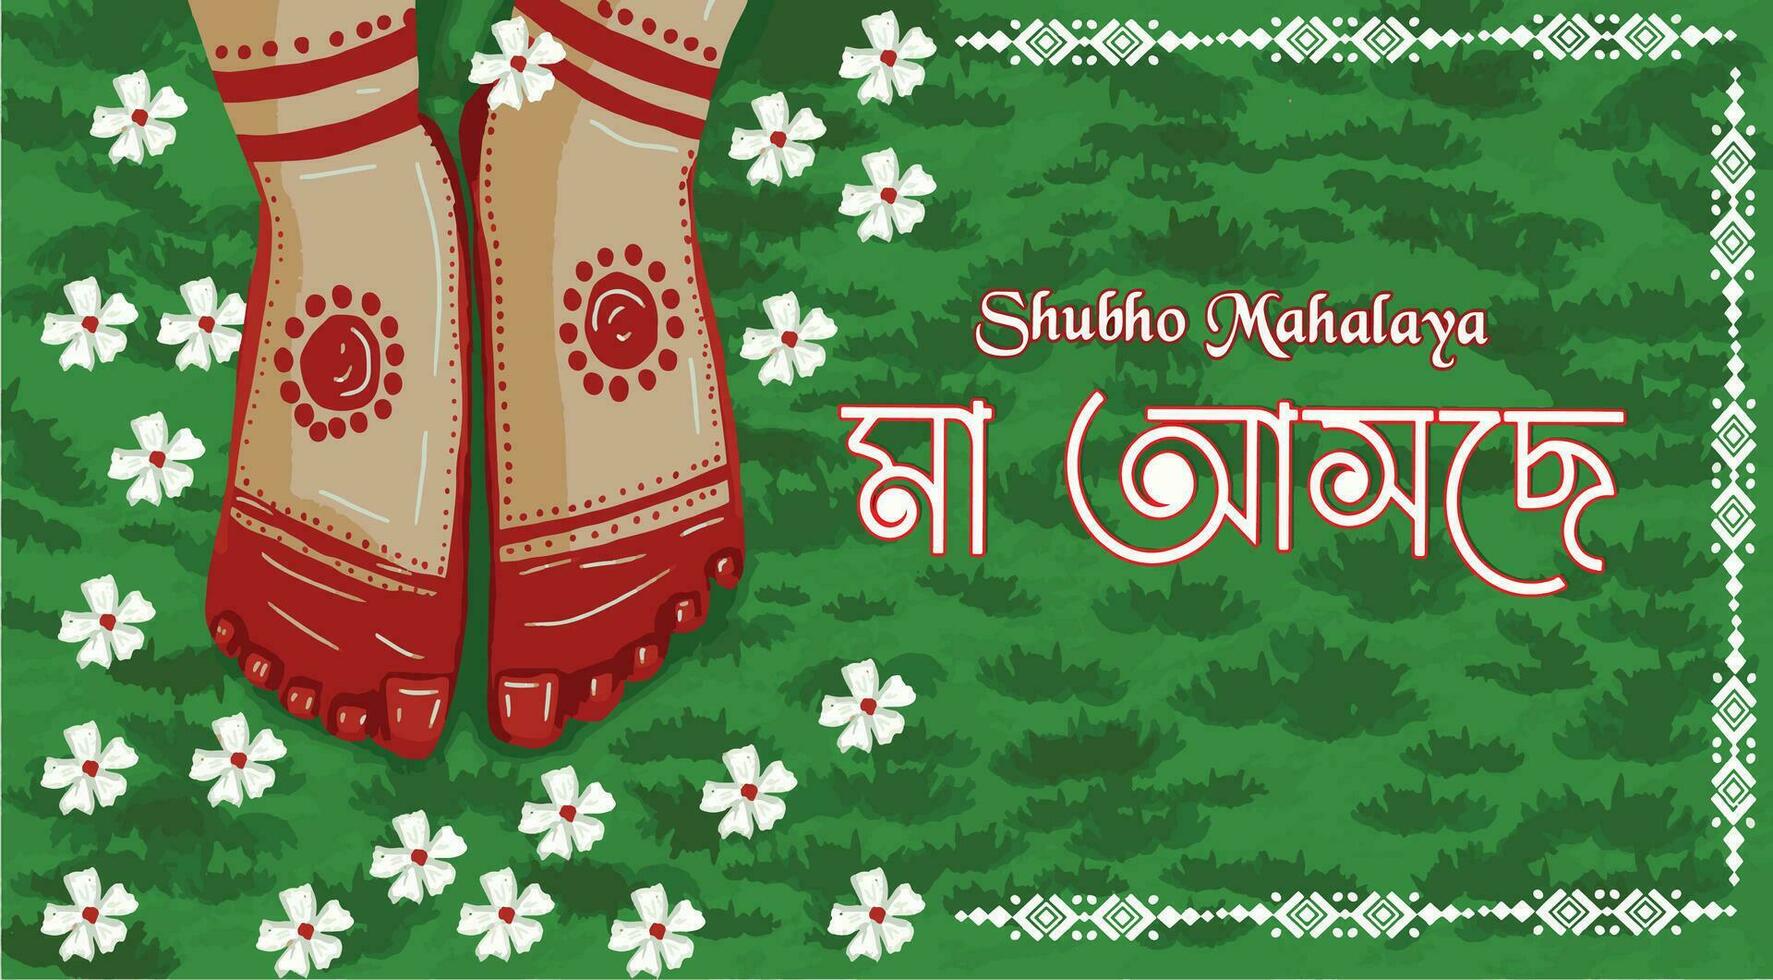 gelukkig mahalaya achtergrond. cultureel vakantie festiviteiten, gelukkig mahalaya poster.dit boeiend illustratie poster vangt de essence van shubho mahalaya, vector